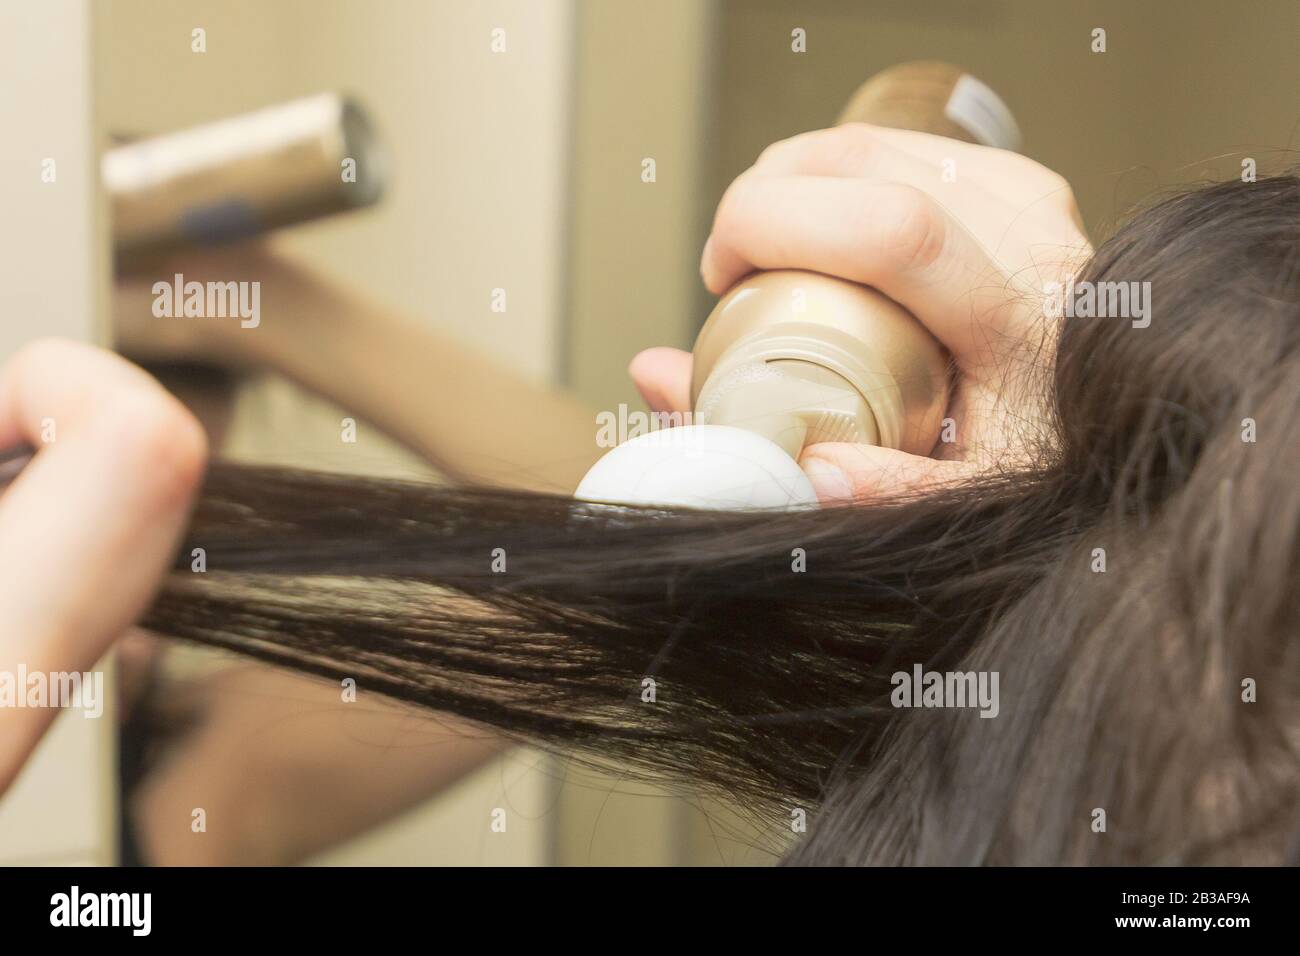 Junge Frauen stylen ihr Haar mit einem Schaum oder einer Mousse. Styling Mousse auf dem braunen langen geraden Haar. Stockfoto